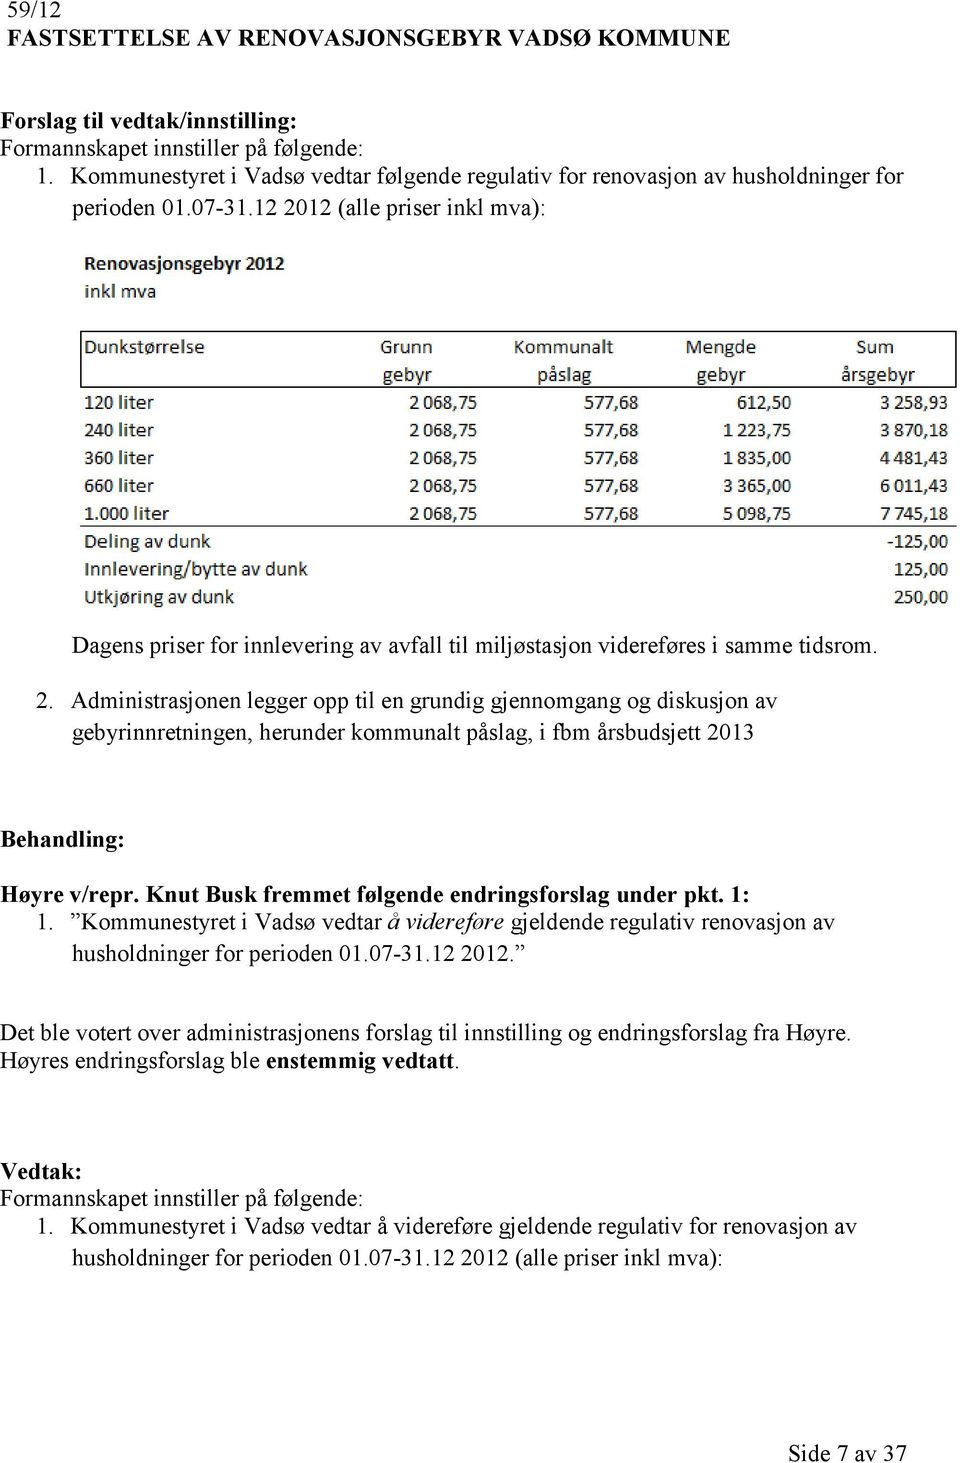 Knut Busk fremmet følgende endringsforslag under pkt. 1: 1. Kommunestyret i Vadsø vedtar å videreføre gjeldende regulativ renovasjon av husholdninger for perioden 01.07-31.12 2012.